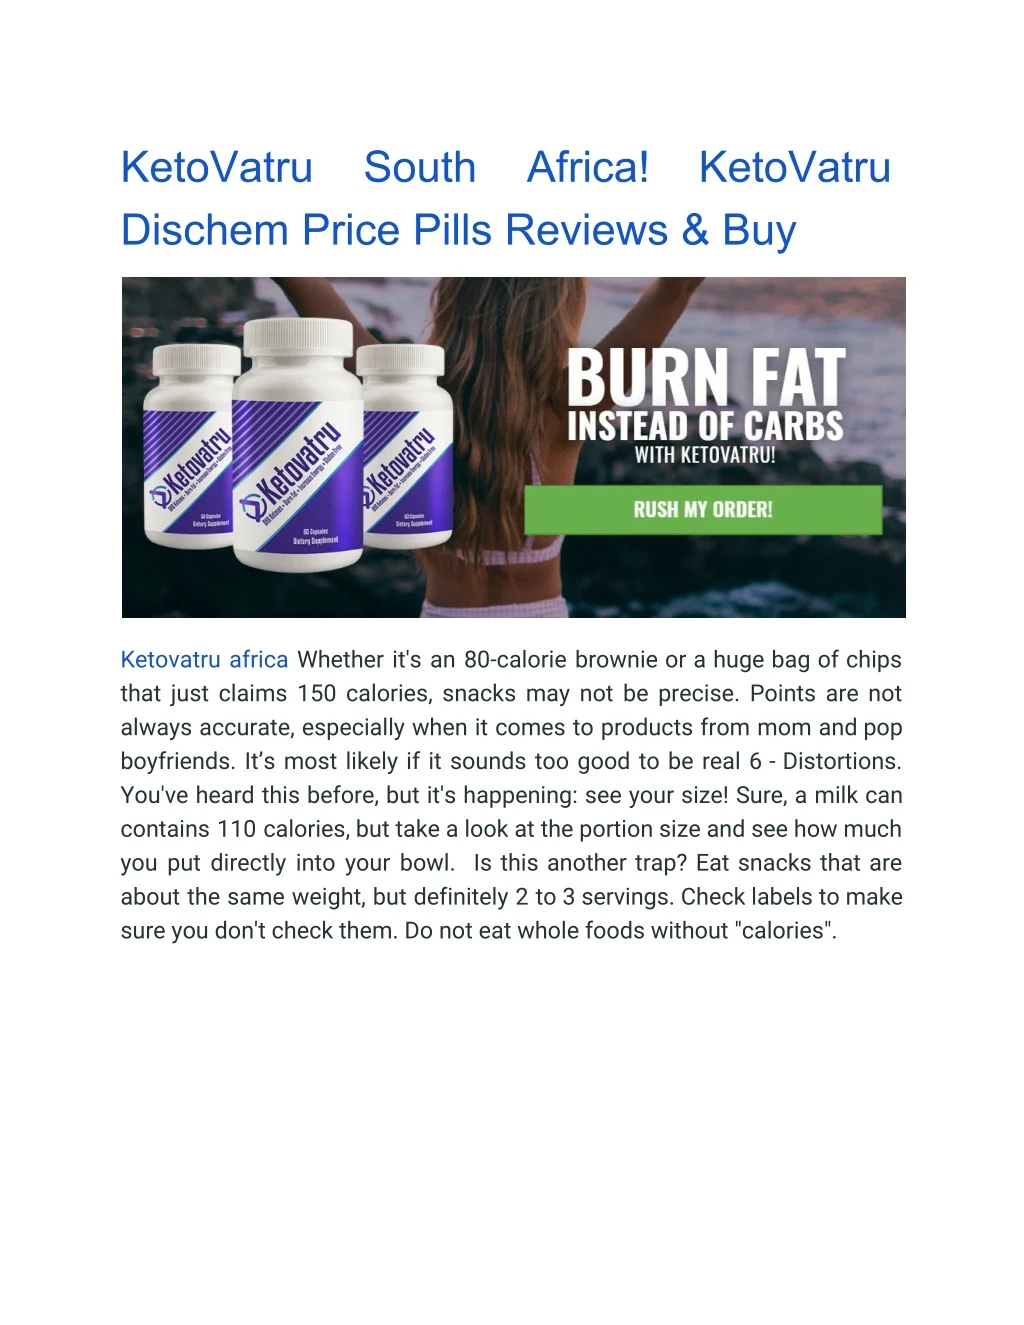 ketovatru dischem price pills reviews buy